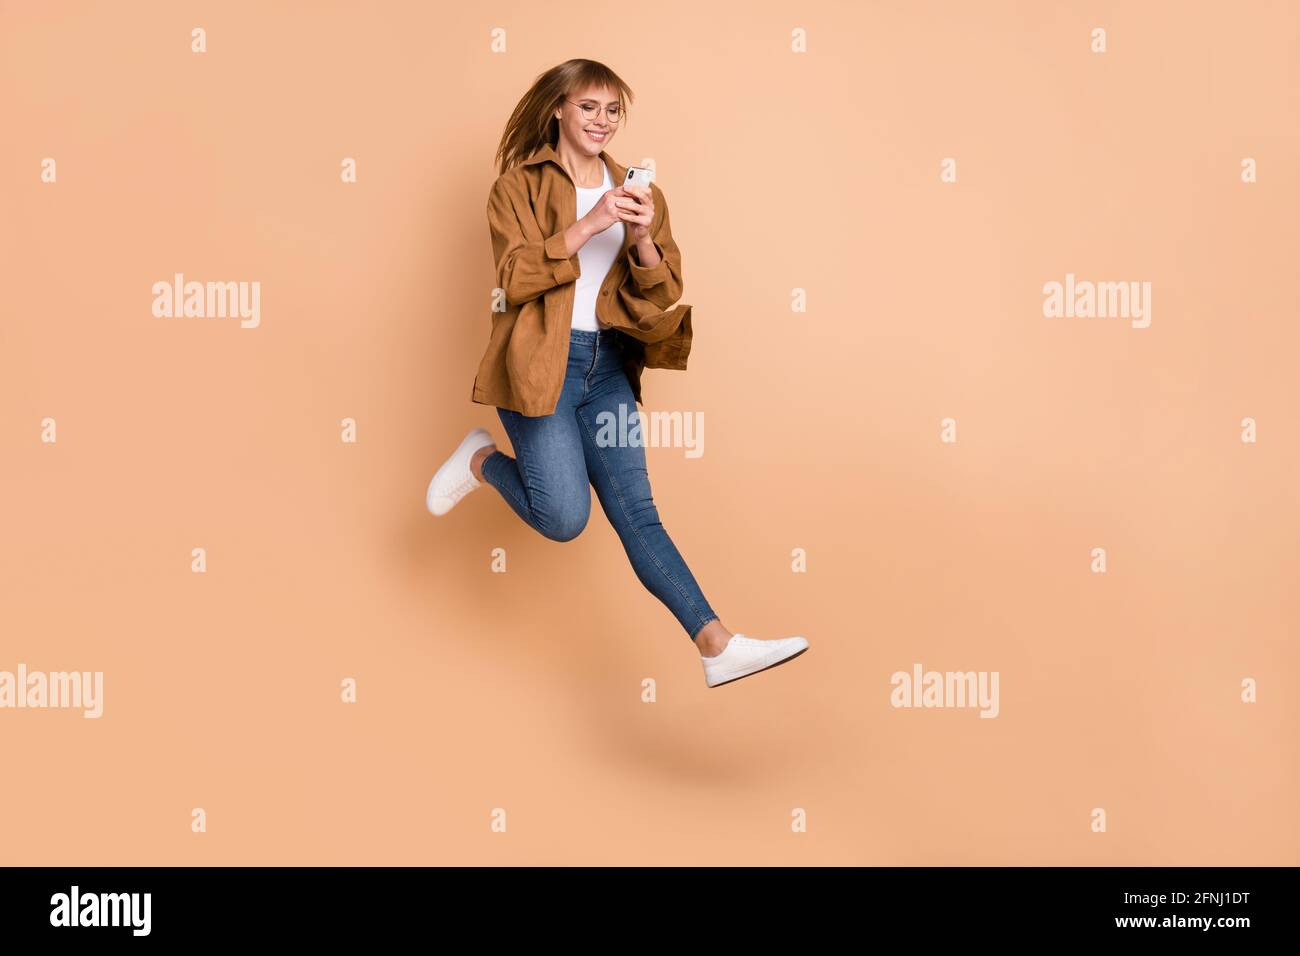 Foto in voller Größe von jungen glücklich lächelnden Mädchen Blogger laufen In Luft süchtig nach Smartphone isoliert auf beigefarbenem Hintergrund Stockfoto